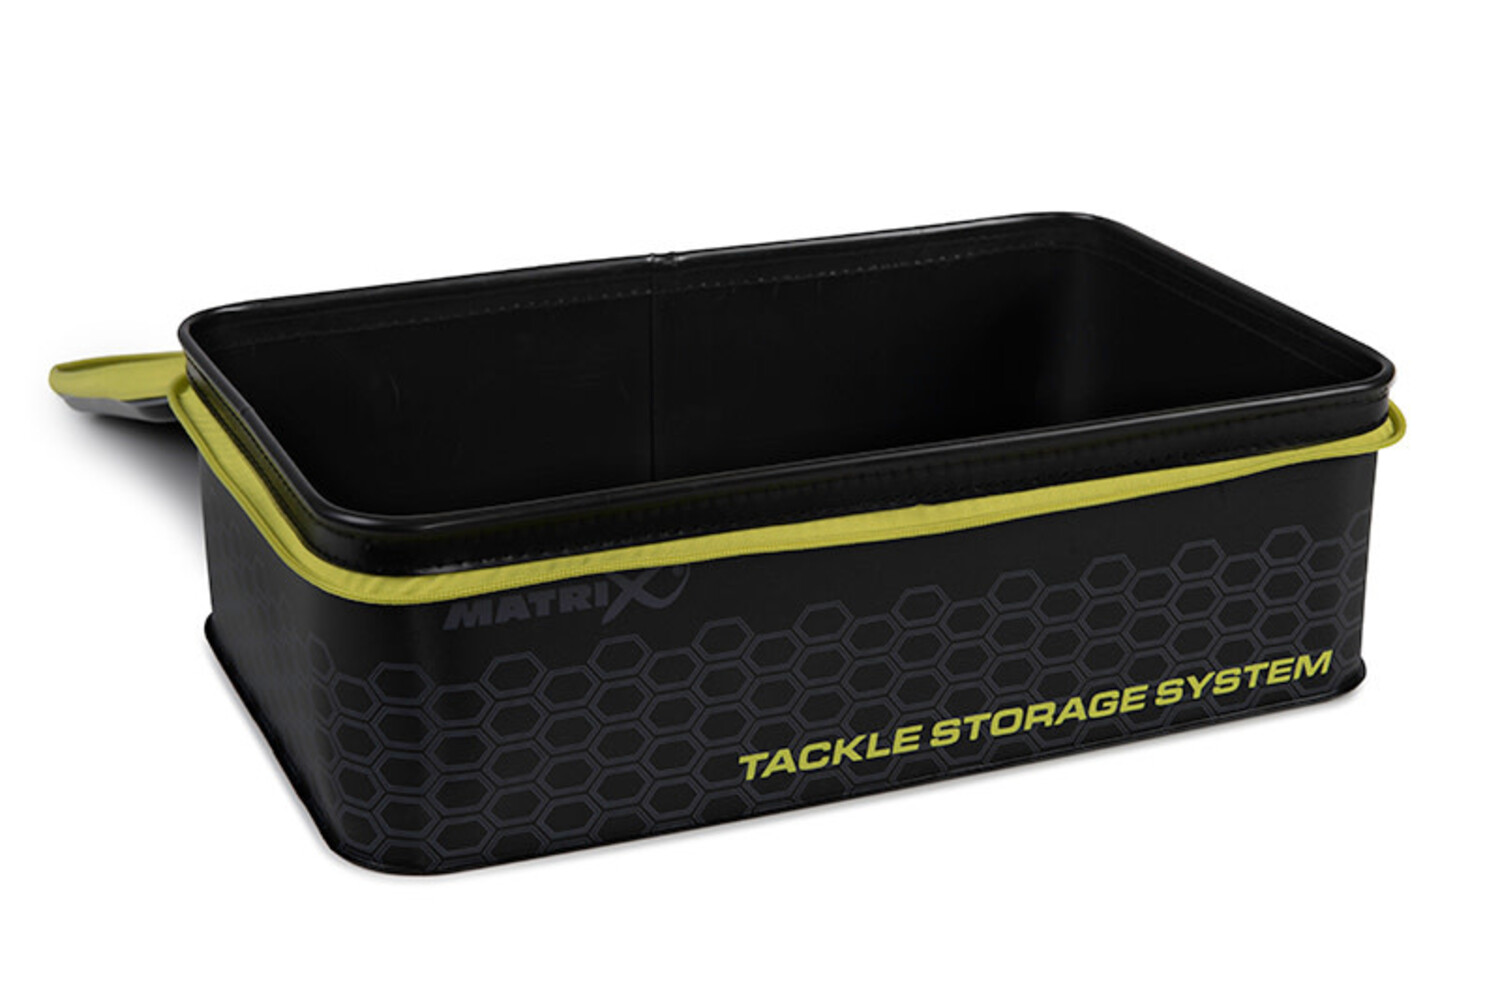 Tackle Box - Le système de stockage complet